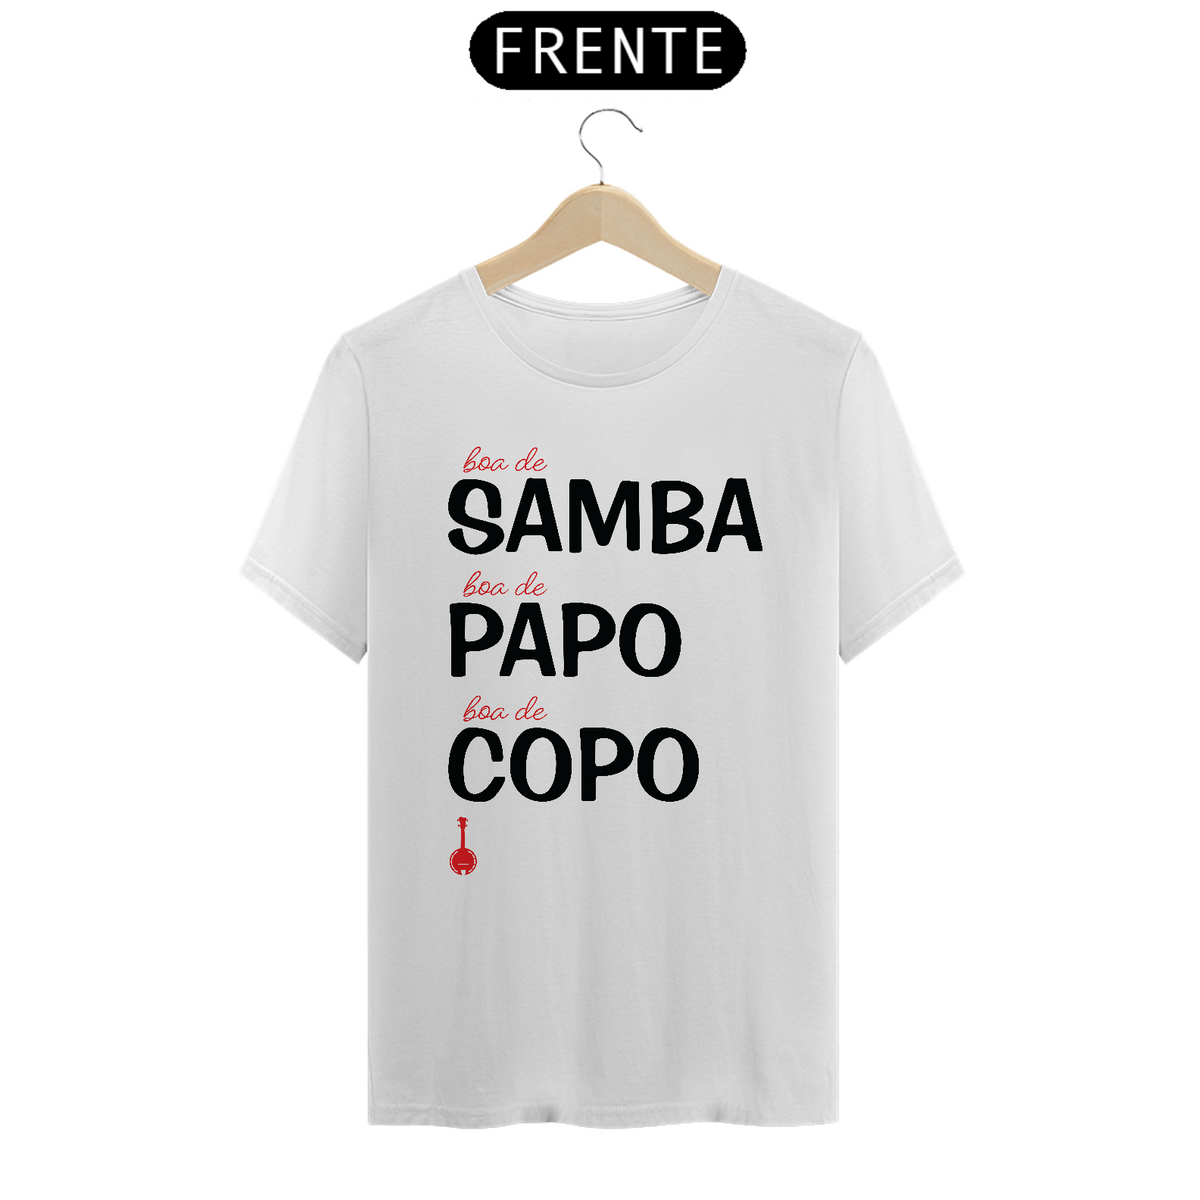 Nome do produto: Camiseta Boa de Samba, Boa de Papo, Bam de Copo